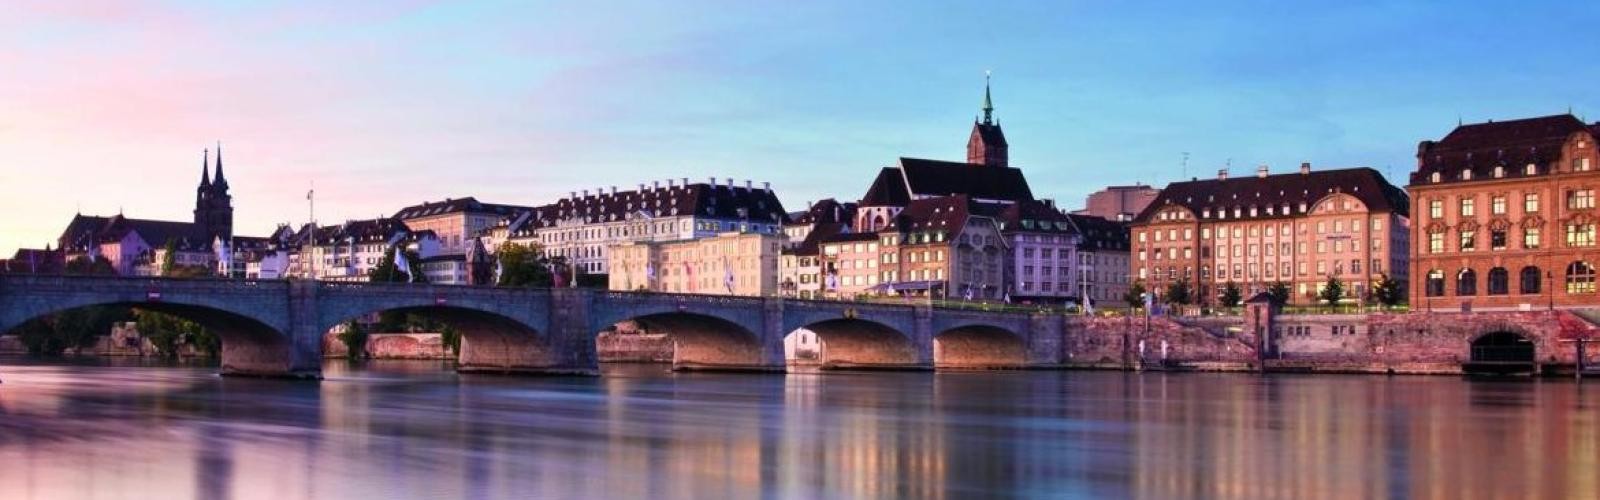 Morgenstimmung in Basel, Fluss mit Brücke und Gebäuden